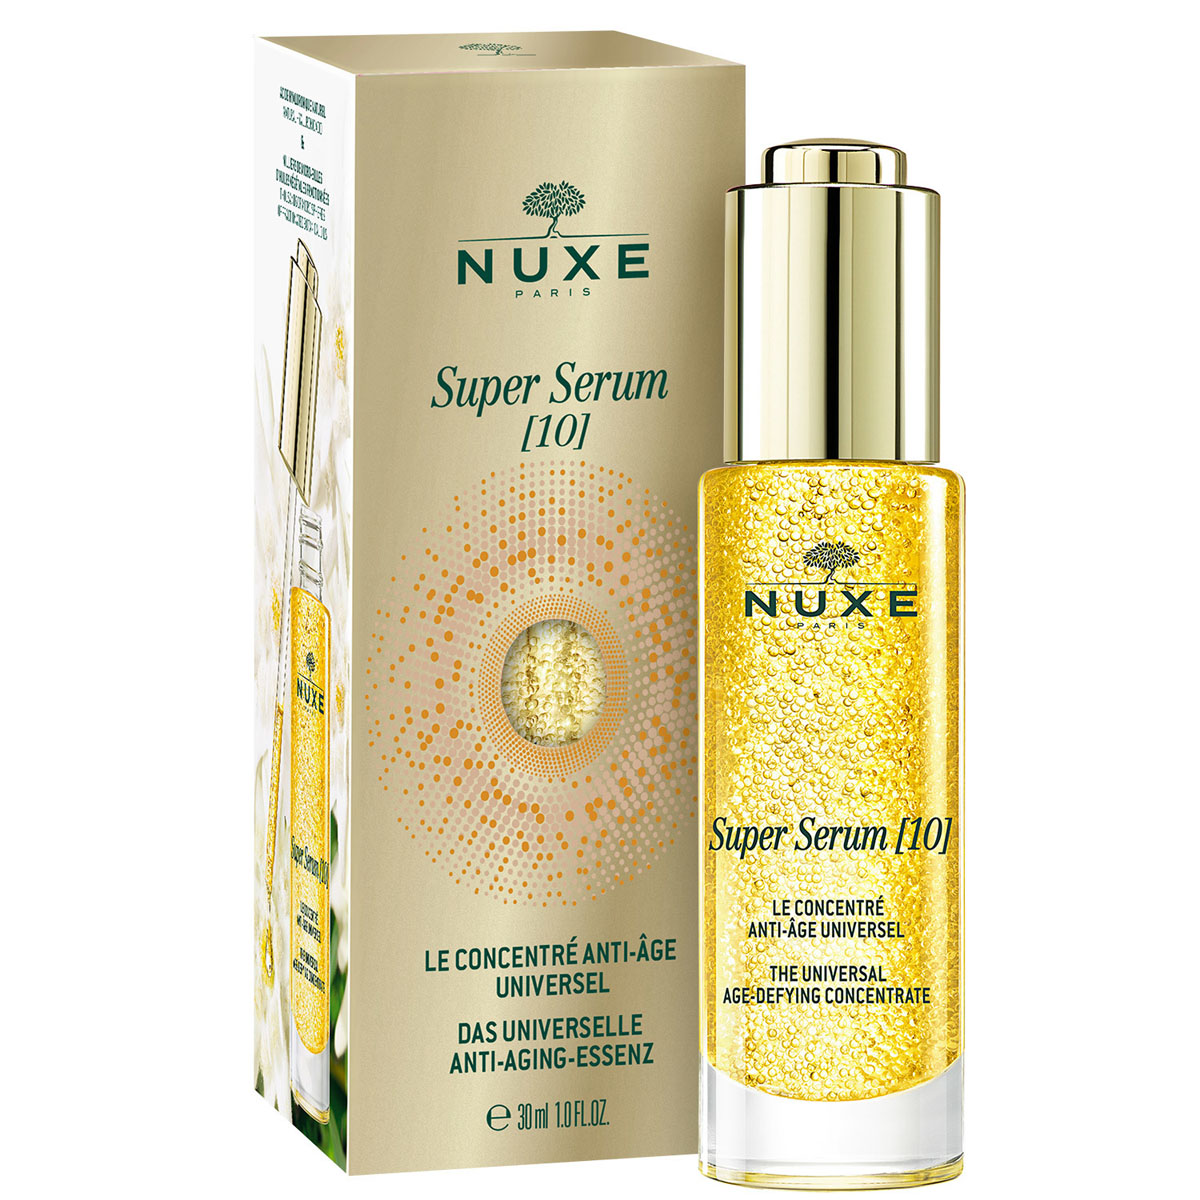 Nuxe Антивозрастная сыворотка для лица Super Serum (10), 30 